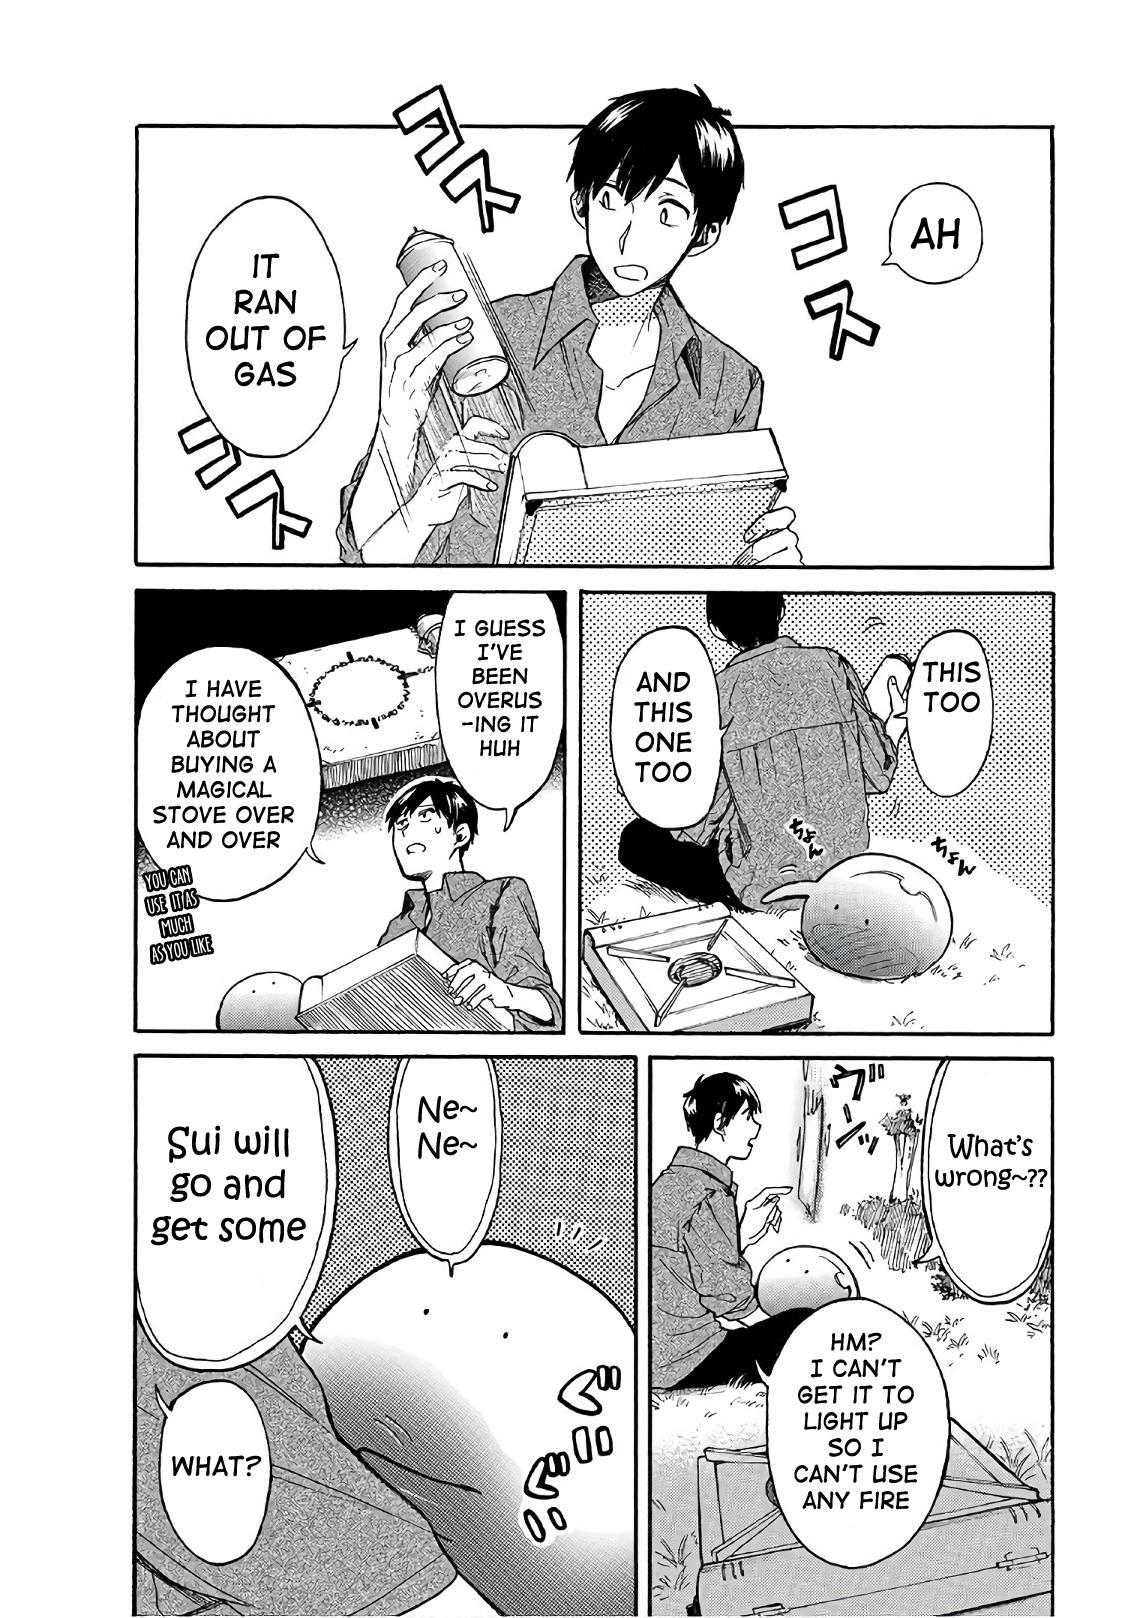 Tondemo Skill de Isekai Hourou Meshi: Sui no Daibouken Ch.30 Page 1 -  Mangago